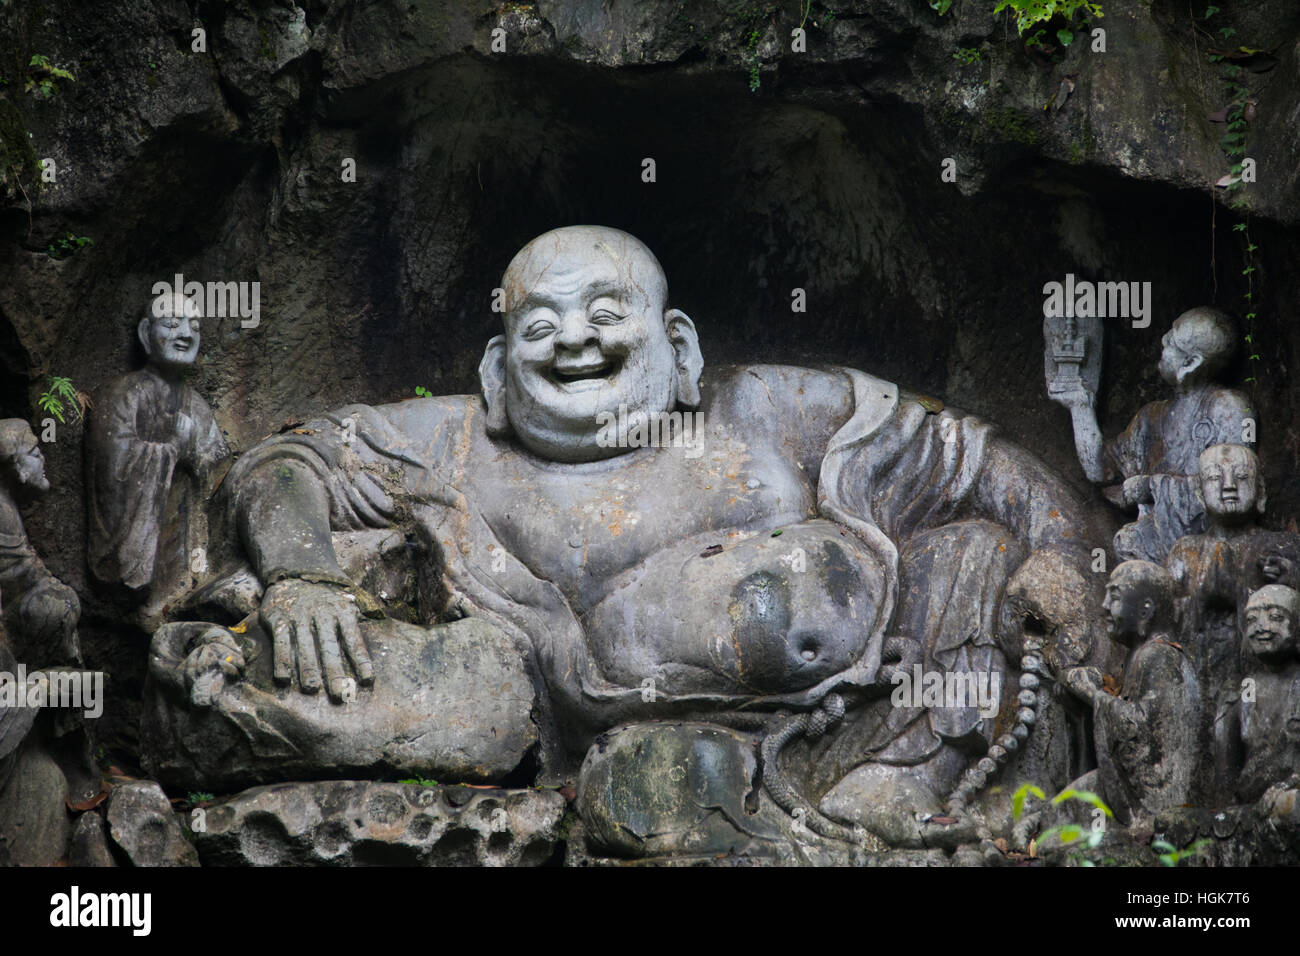 Laughing Buddha, Feilai Feng limestone grottoes at Ling Yin temple Hangzhou China Stock Photo